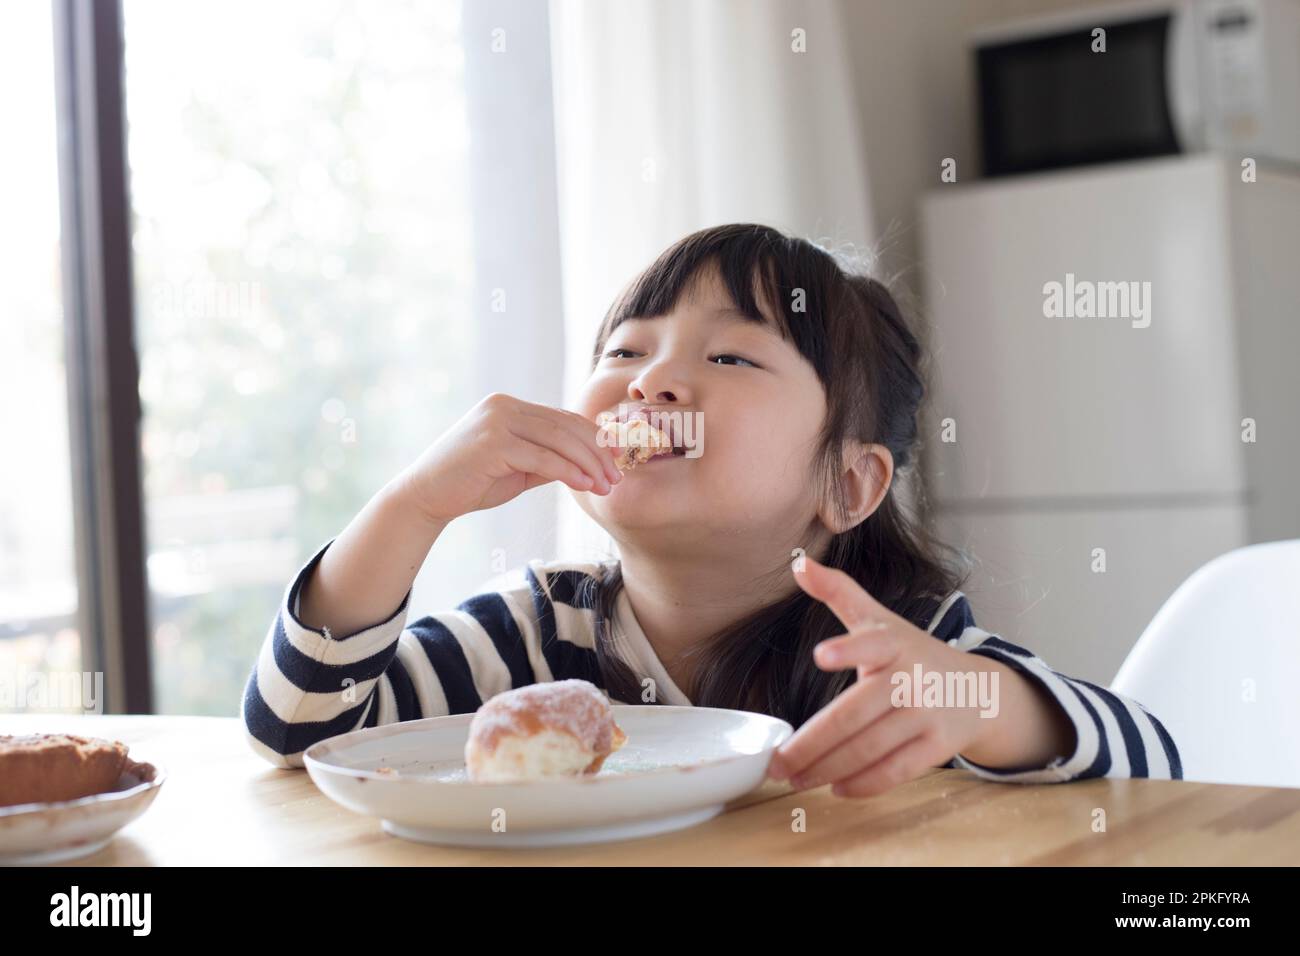 Girl eating a snack doughnut Stock Photo